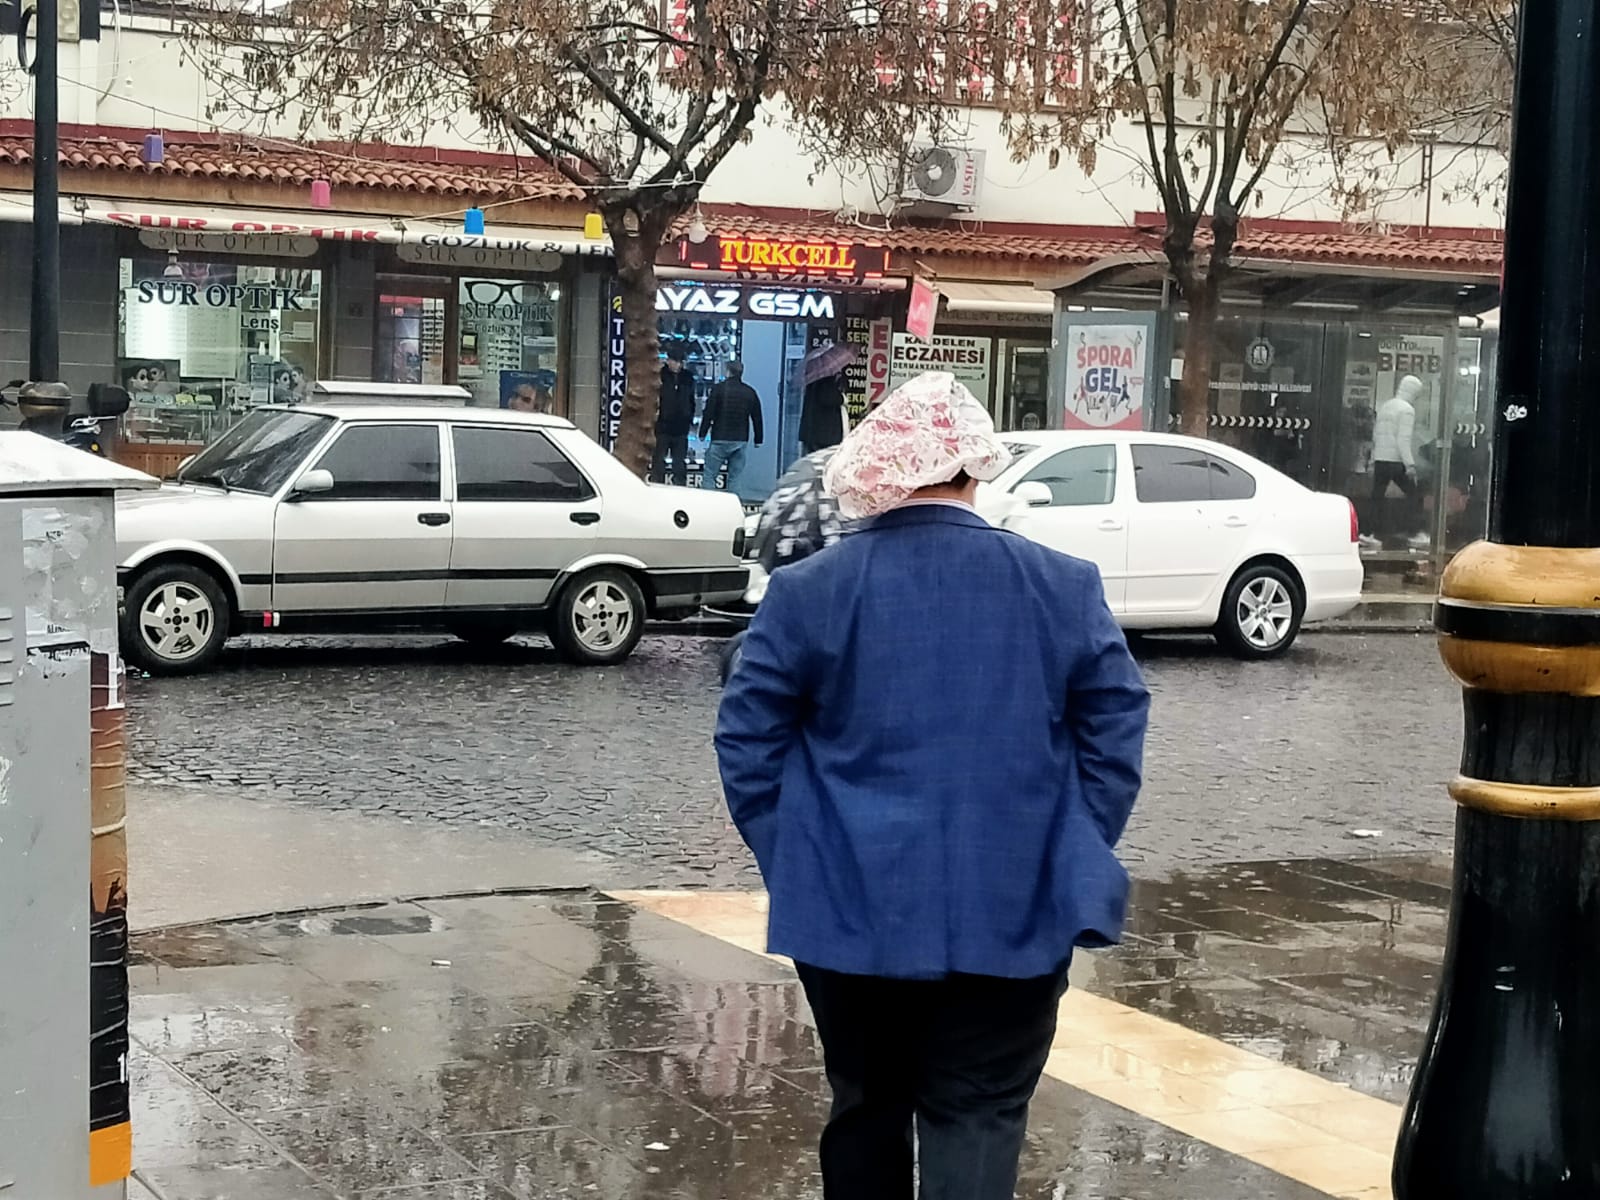 Yağmurdan korunmaya çalışan Diyarbakır halkı ilginç yöntemlere başvurdu